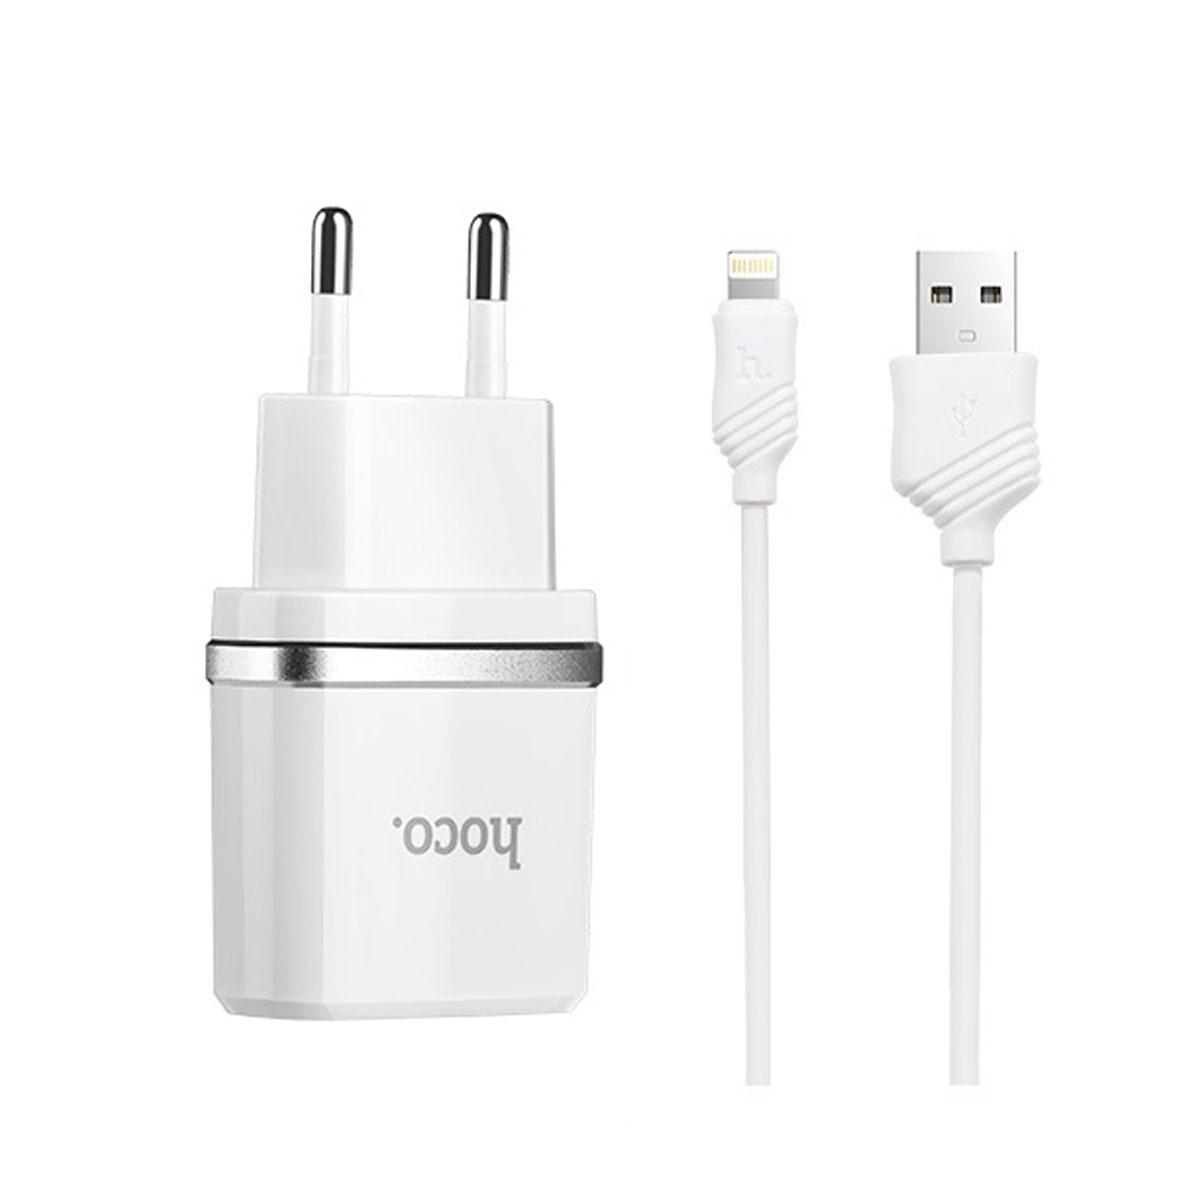 СЗУ (Сетевое зарядное устройство) HOCO C11 Single с кабелем Lightning 8 pin, 1A, 1 USB, длина 1 метр, цвет белый